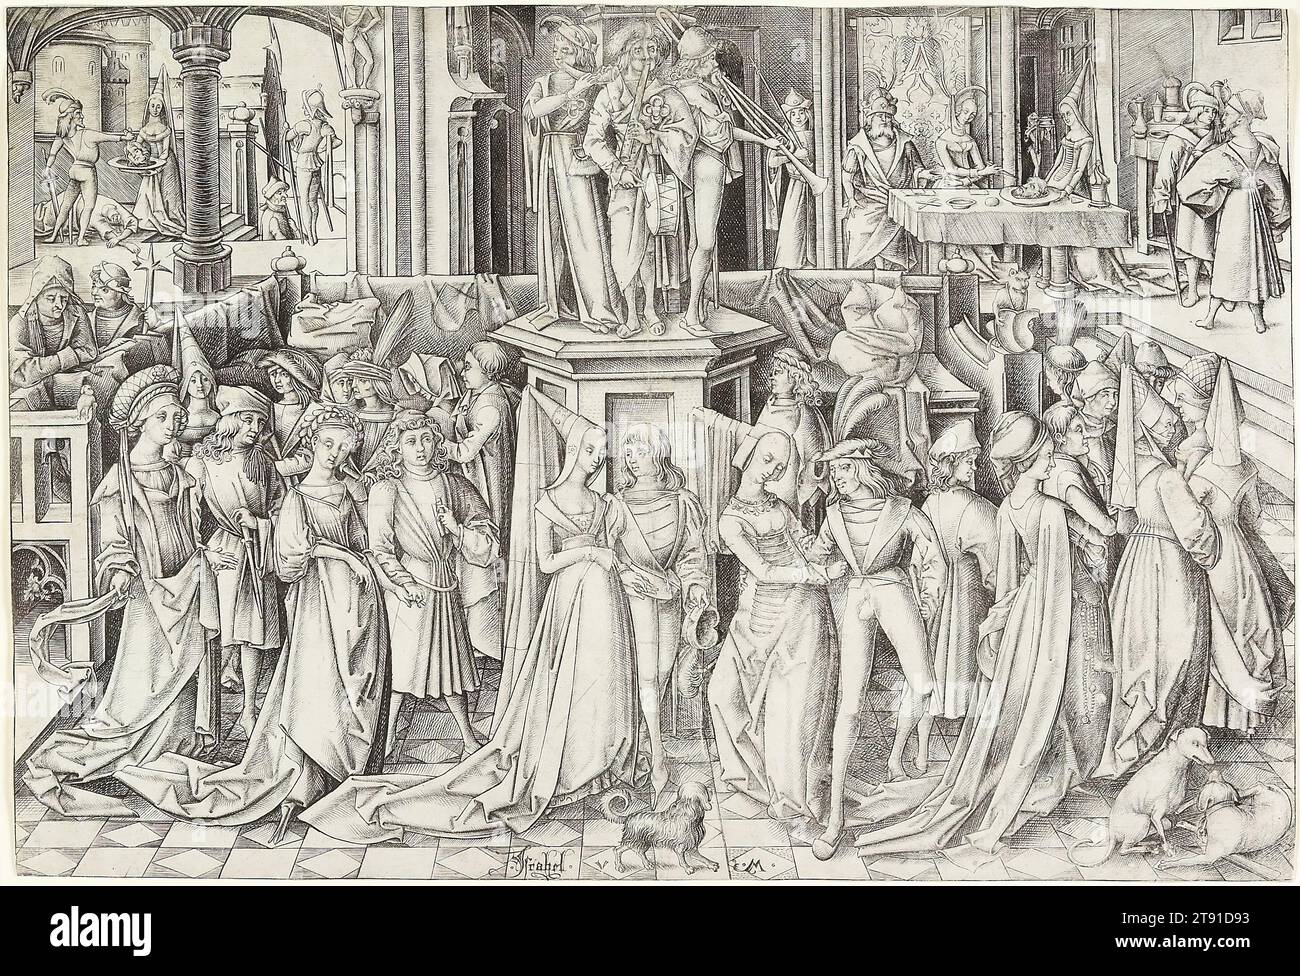 Der Tanz am Hofe Herodes, um 1500, Israhel van Meckenem, um 1445–1503, 7/16 x 3/8 Zoll (21,43 x 31,43 cm) (Bild), Gravur, Deutschland, 15.-16. Jahrhundert, Israhel van Meckenem inszenierte diese verzierte Evangeliumsgeschichte in zeitgenössischem, um 1500, Kostüm. Musik und Tanz begrüßen uns zu Festlichkeiten am Hof des Herodes, des Königs von Judäa, aber es gibt Ärger. Johannes der Täufer war zuvor inhaftiert worden, weil er Herodes kritisiert hatte, weil er Herodias geheiratet hatte, der sich von Herodes Halbbruder scheiden ließ. Während der Party sah Herodias ihre Chance auf noch größere Rache. Stockfoto